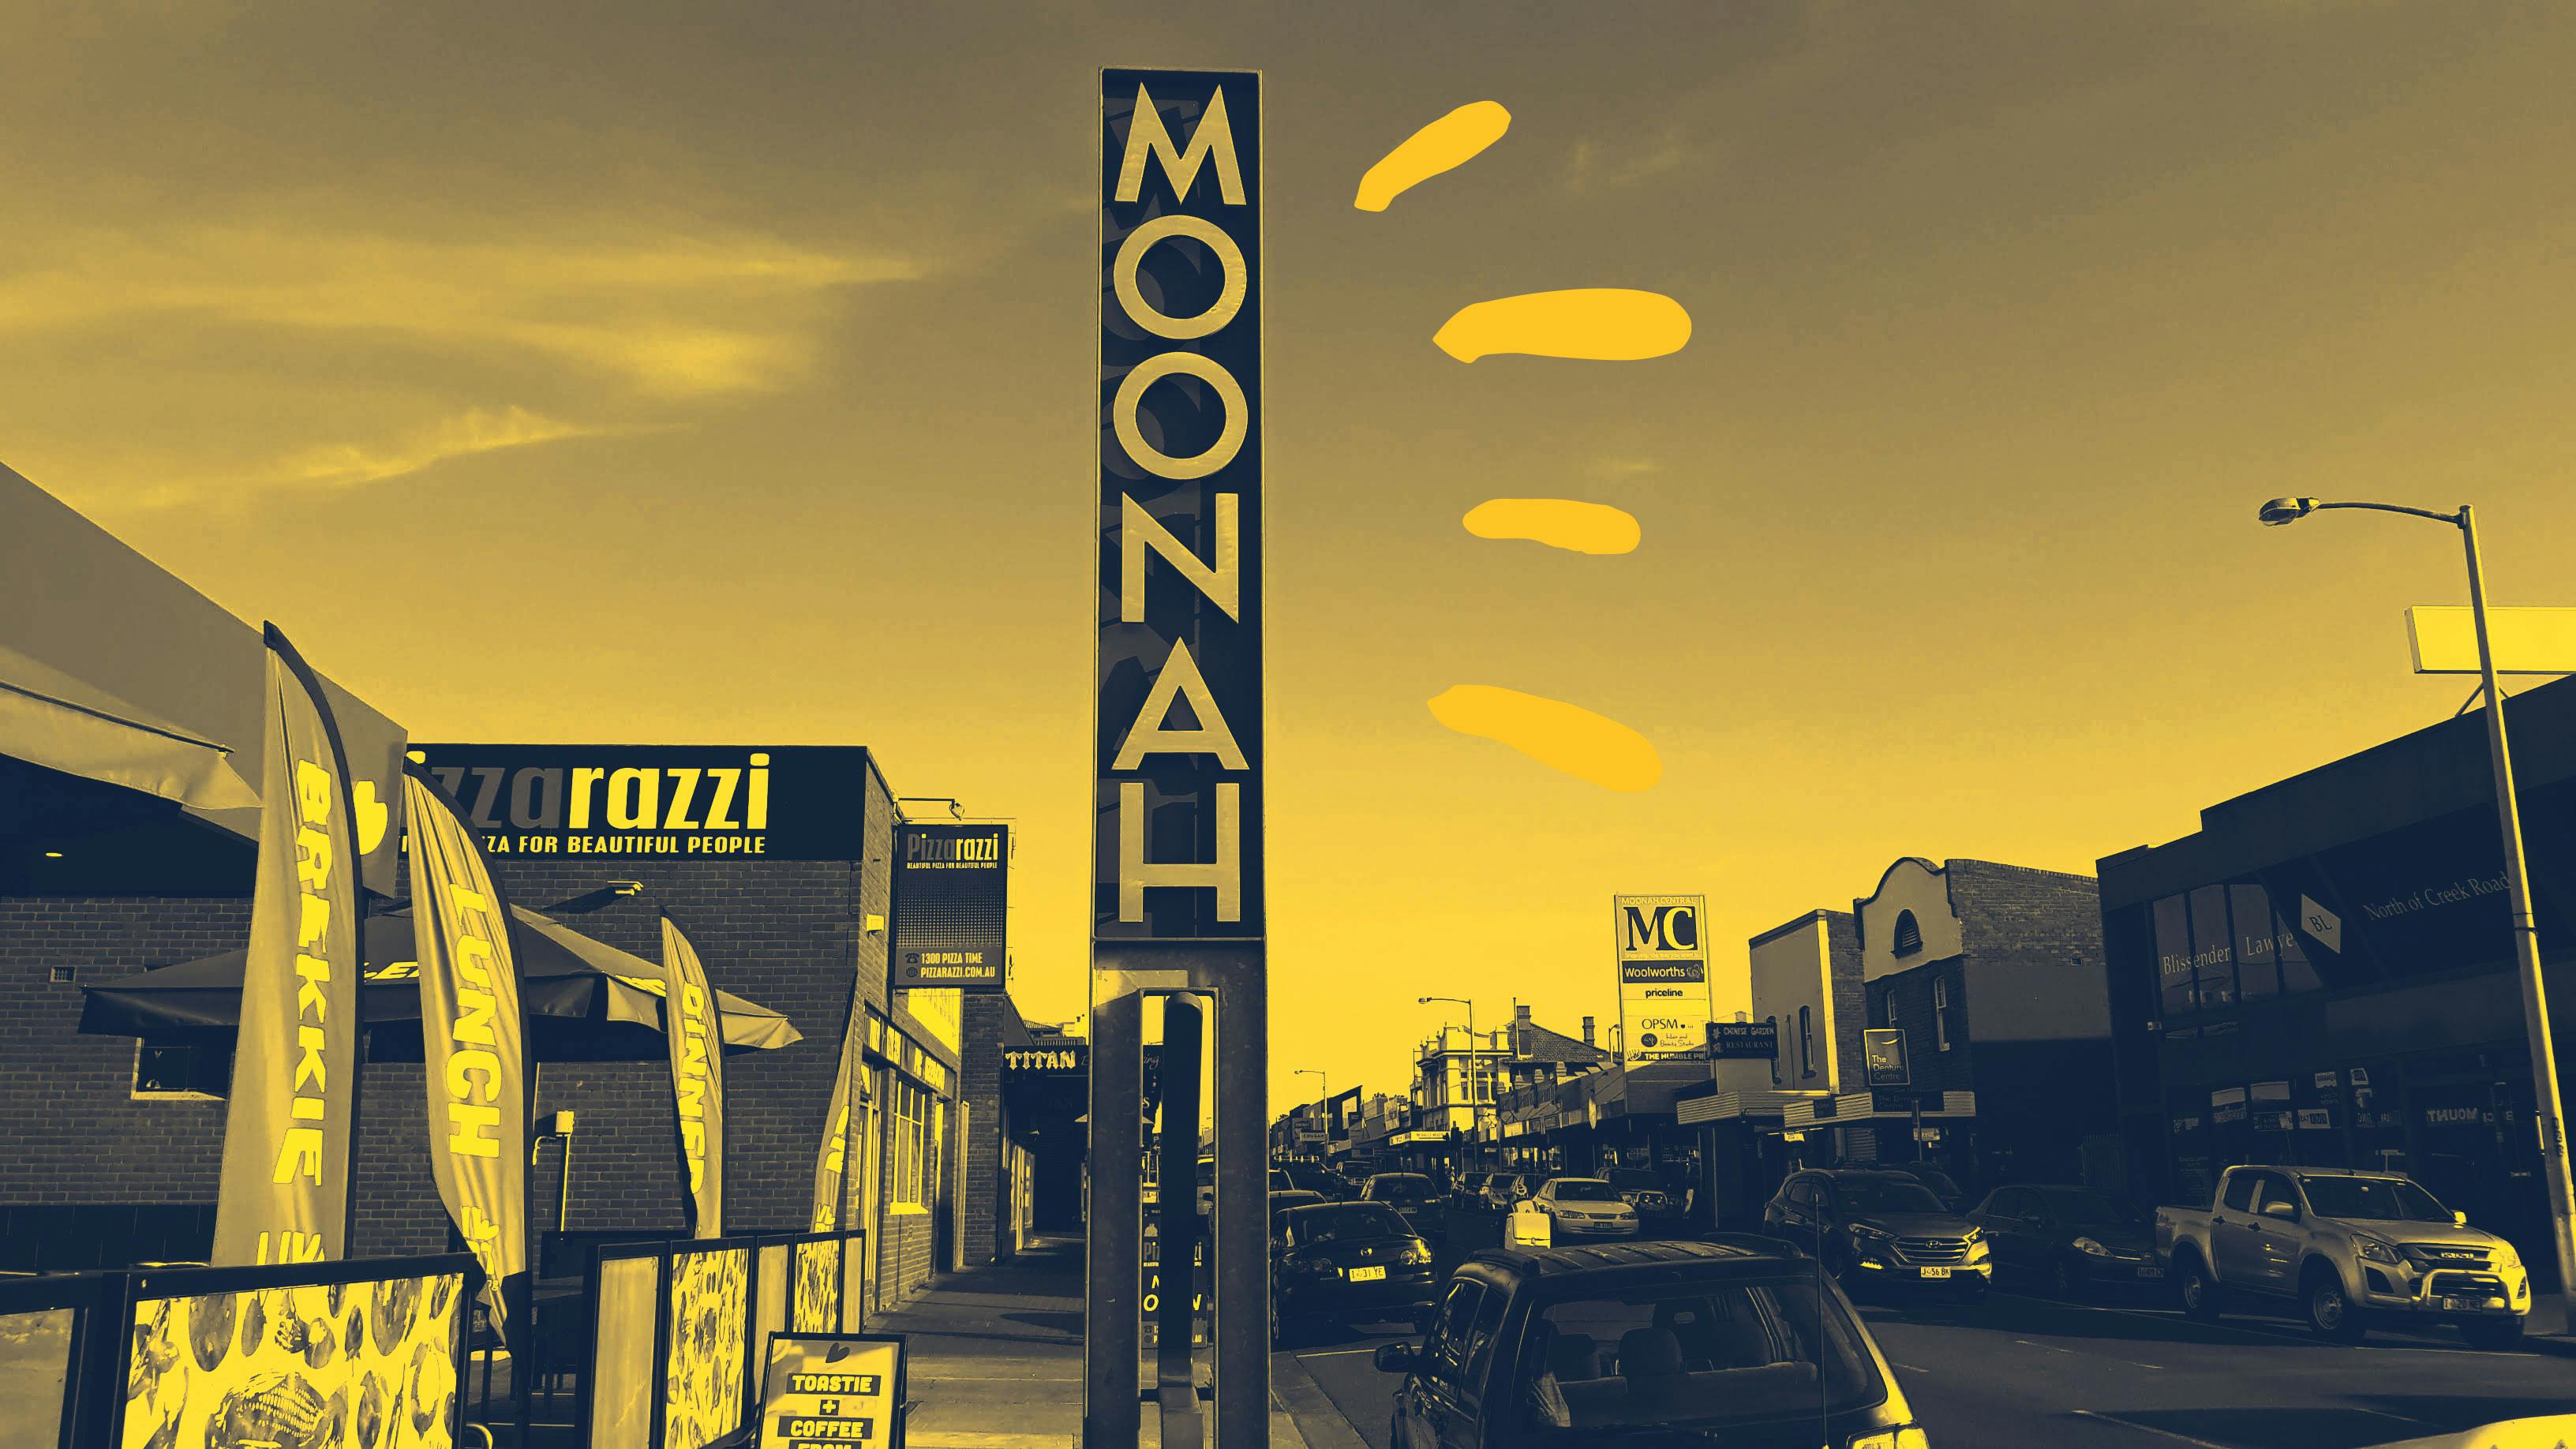 Moonah-1-arty.jpg